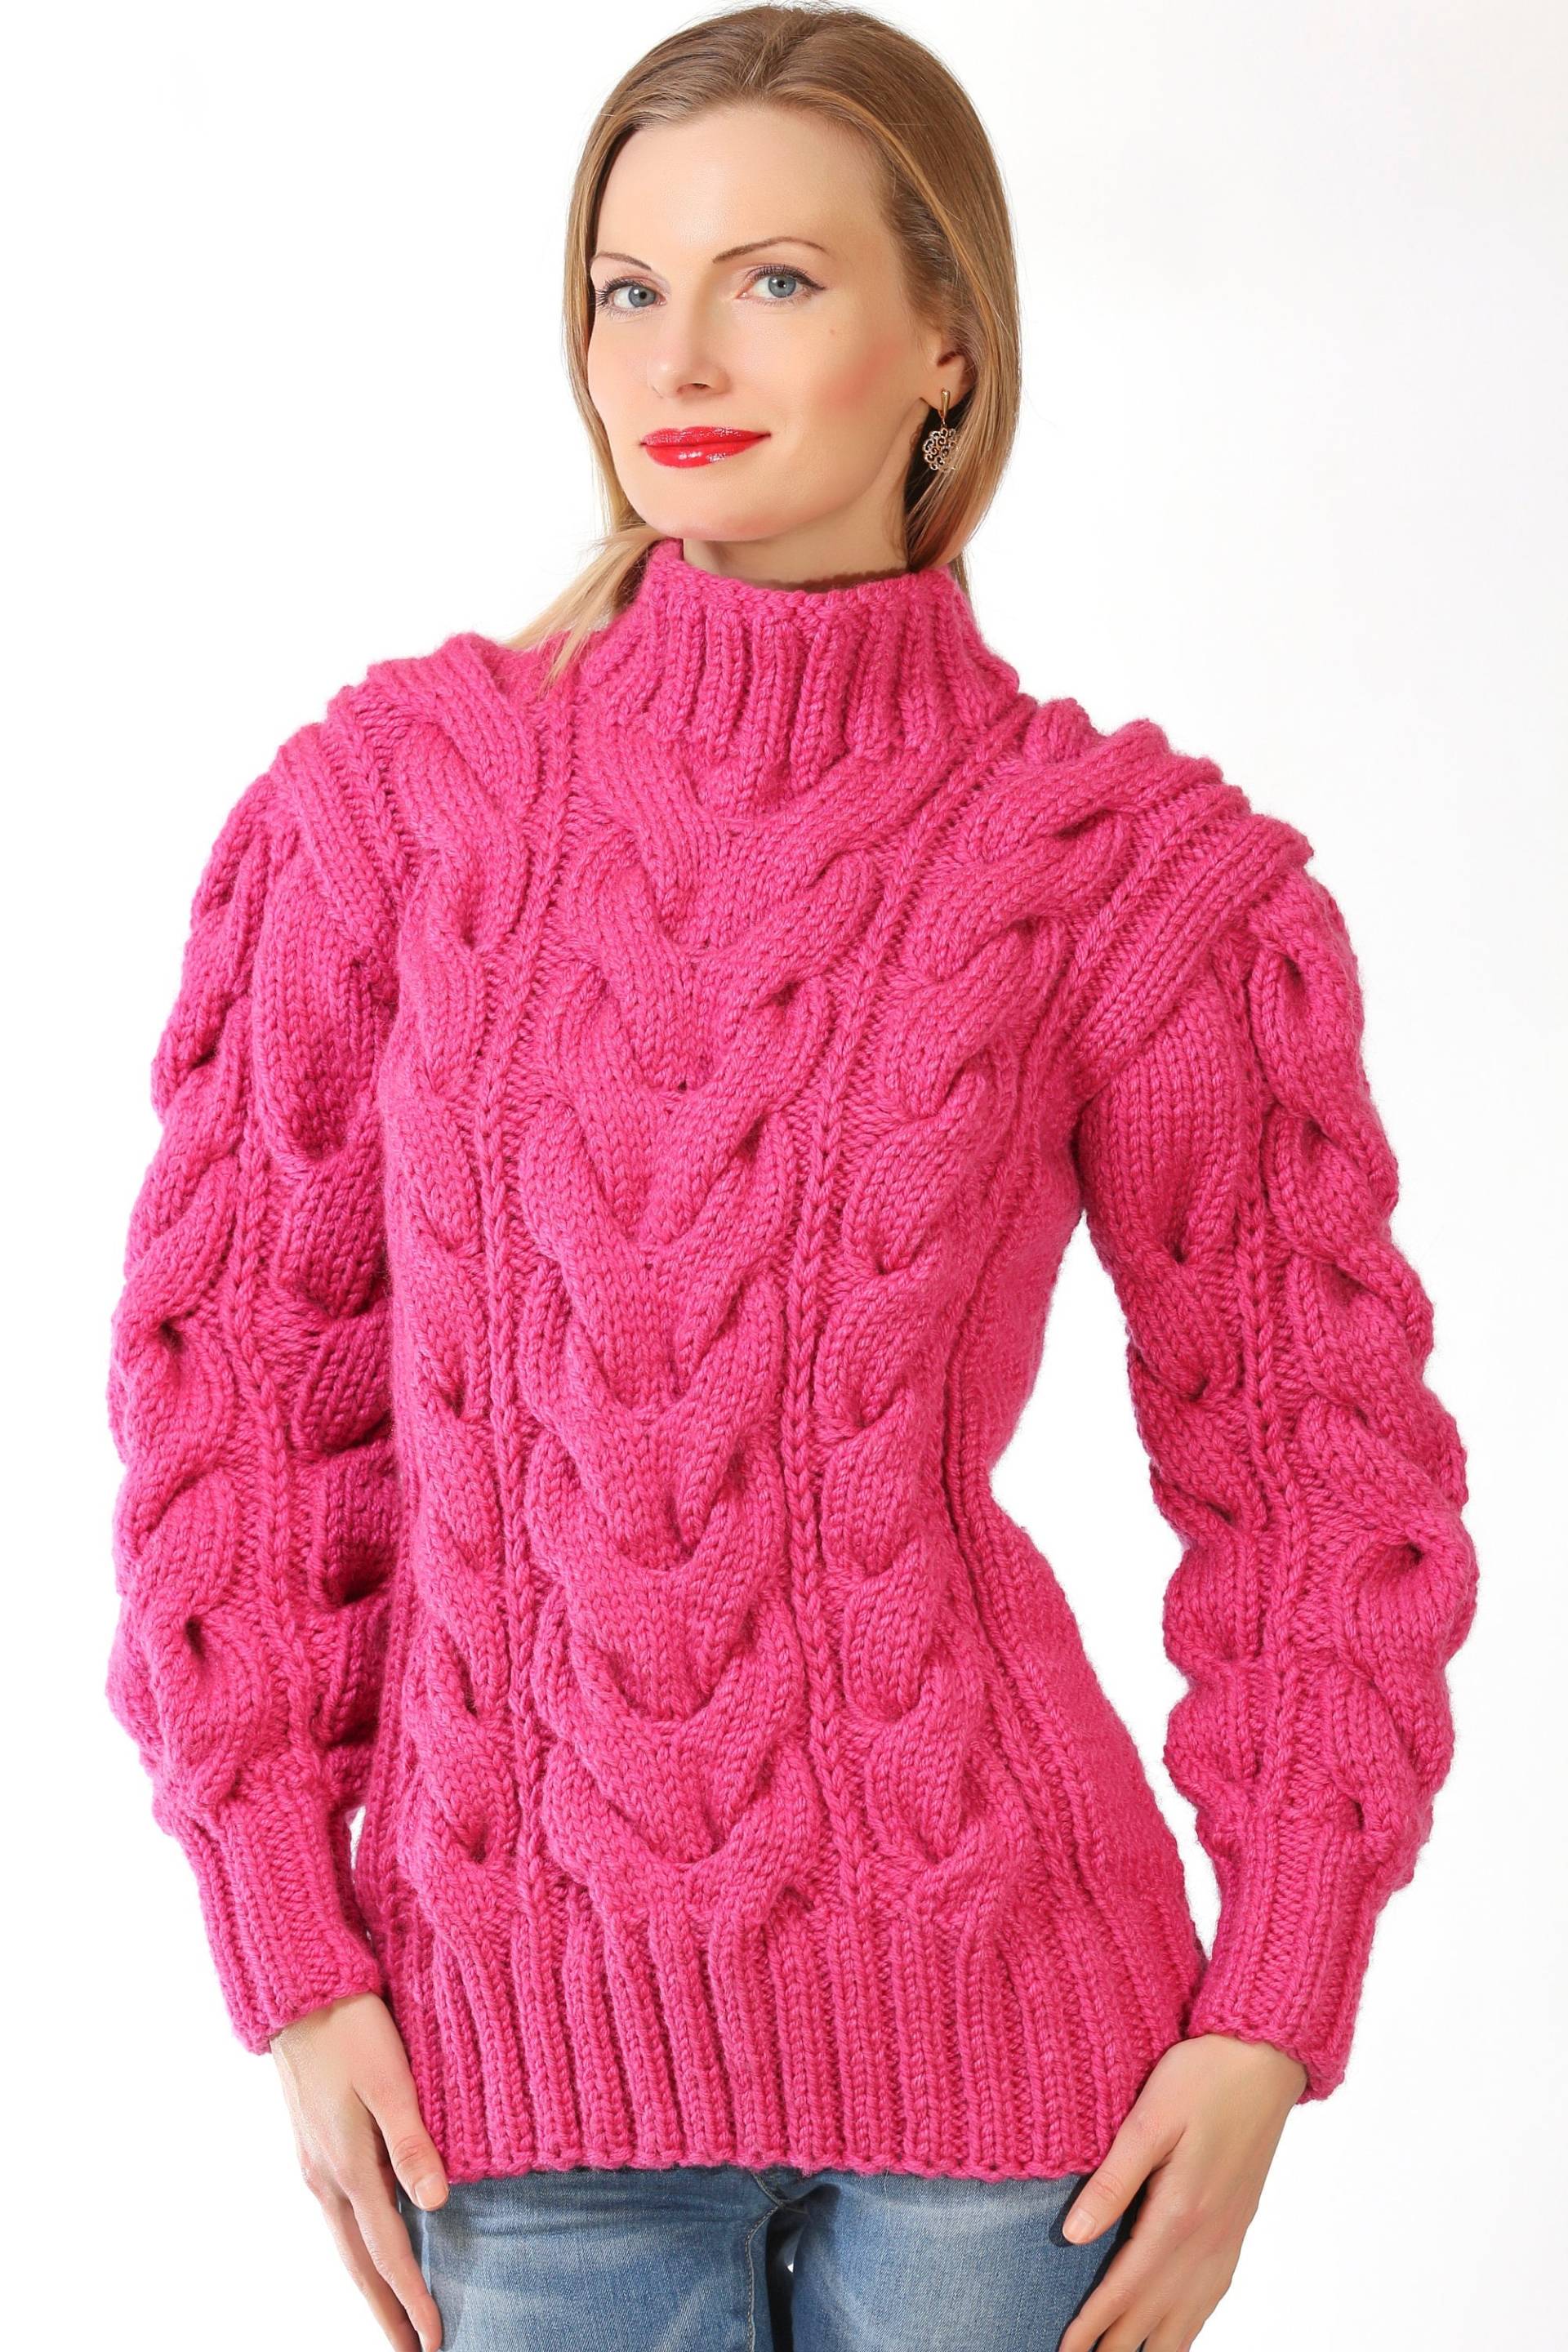 Supertanya Sweater von SUPERTANYA